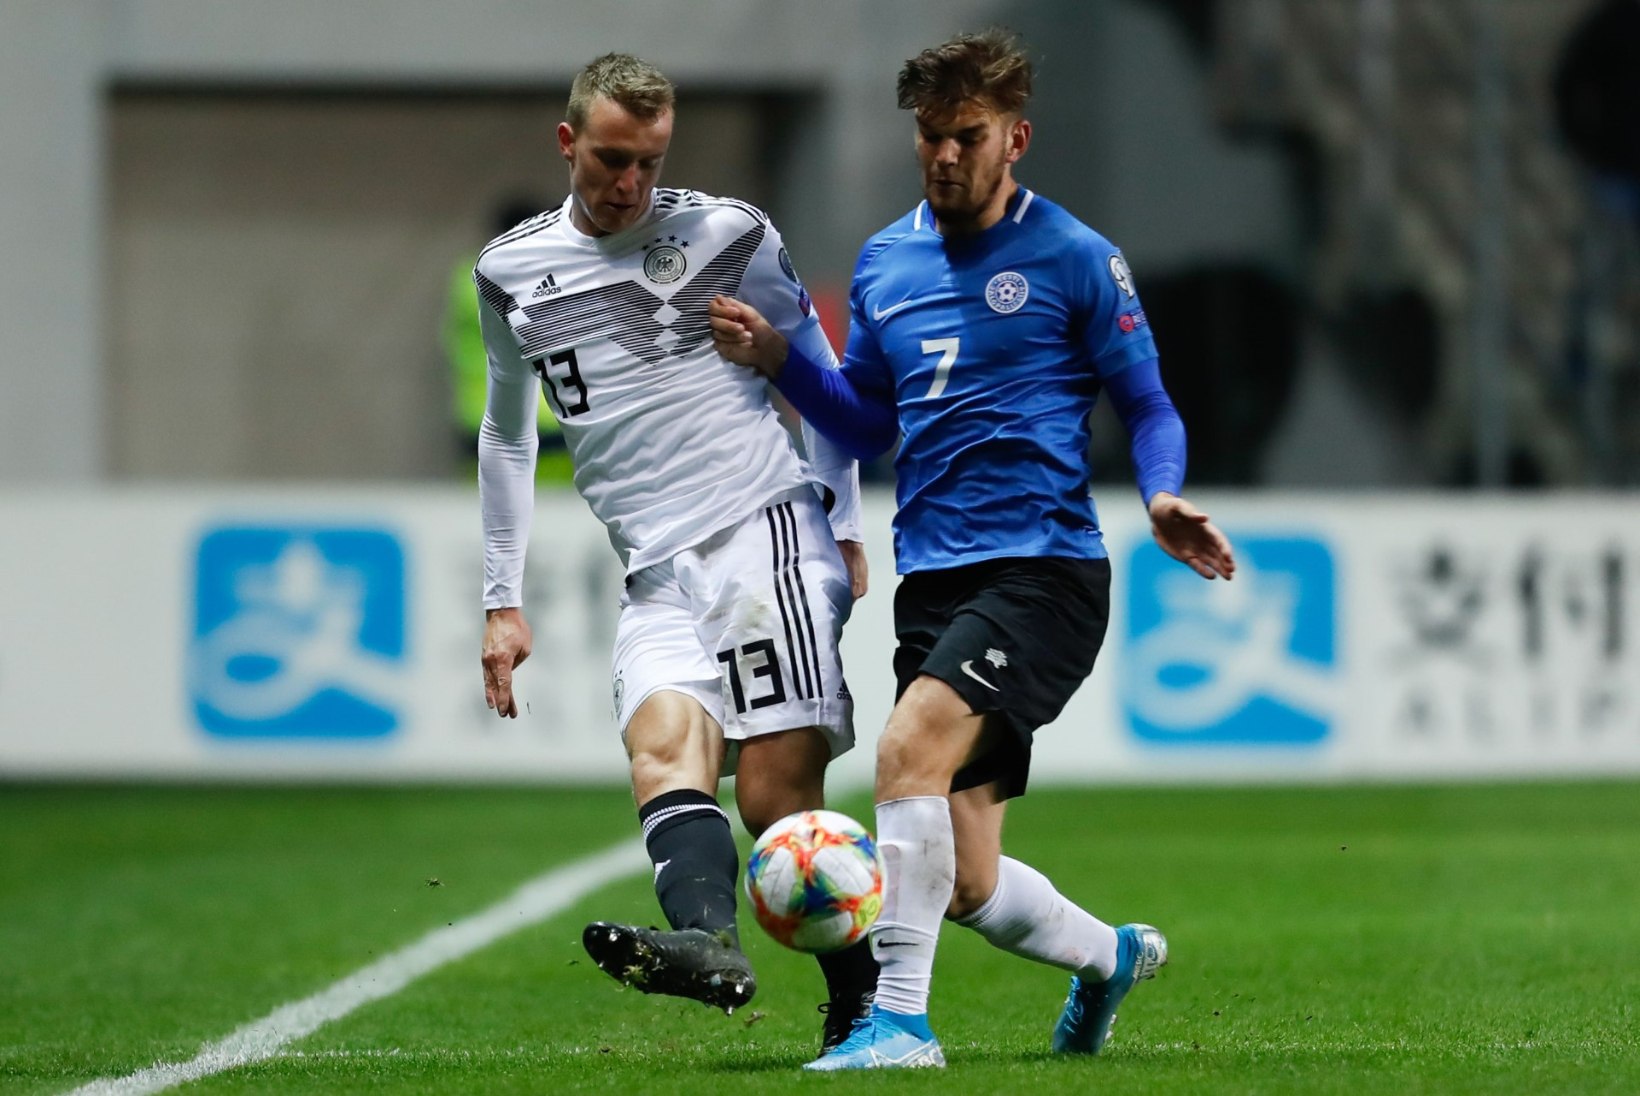 Saksamaa jalgpallikoondislane pani oksjonile mängusärgi, mida ta Eesti vastu kandis